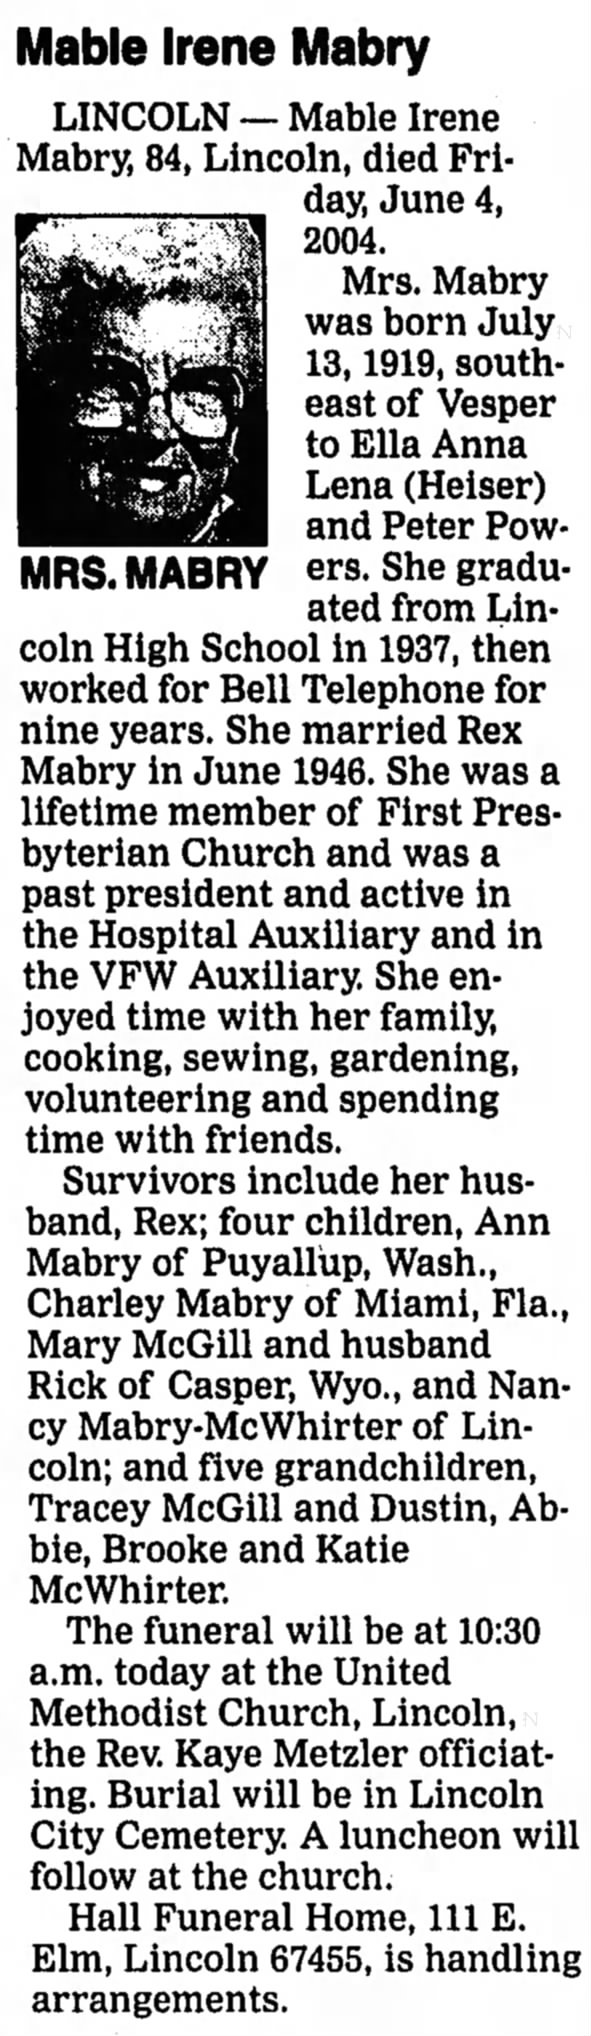 Mable Irene Powers Mabry Obituary